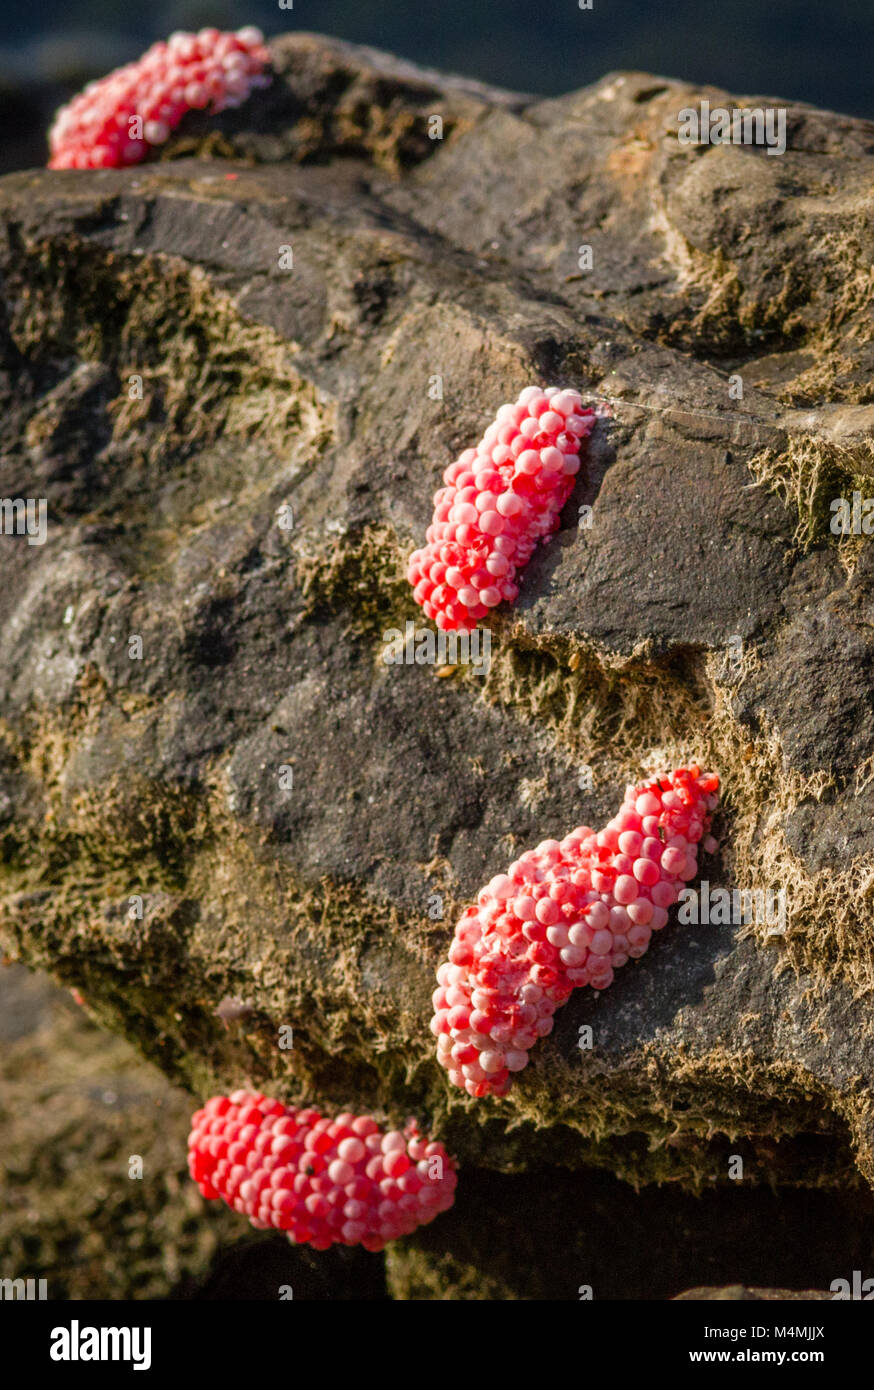 Rosa luminoso uova di acquatico lumaca Apple Pomacea canaliculata prevista sulle rocce di cui sopra contengono acqua potente neurotossina per dissuadere i predatori - Borneo Foto Stock